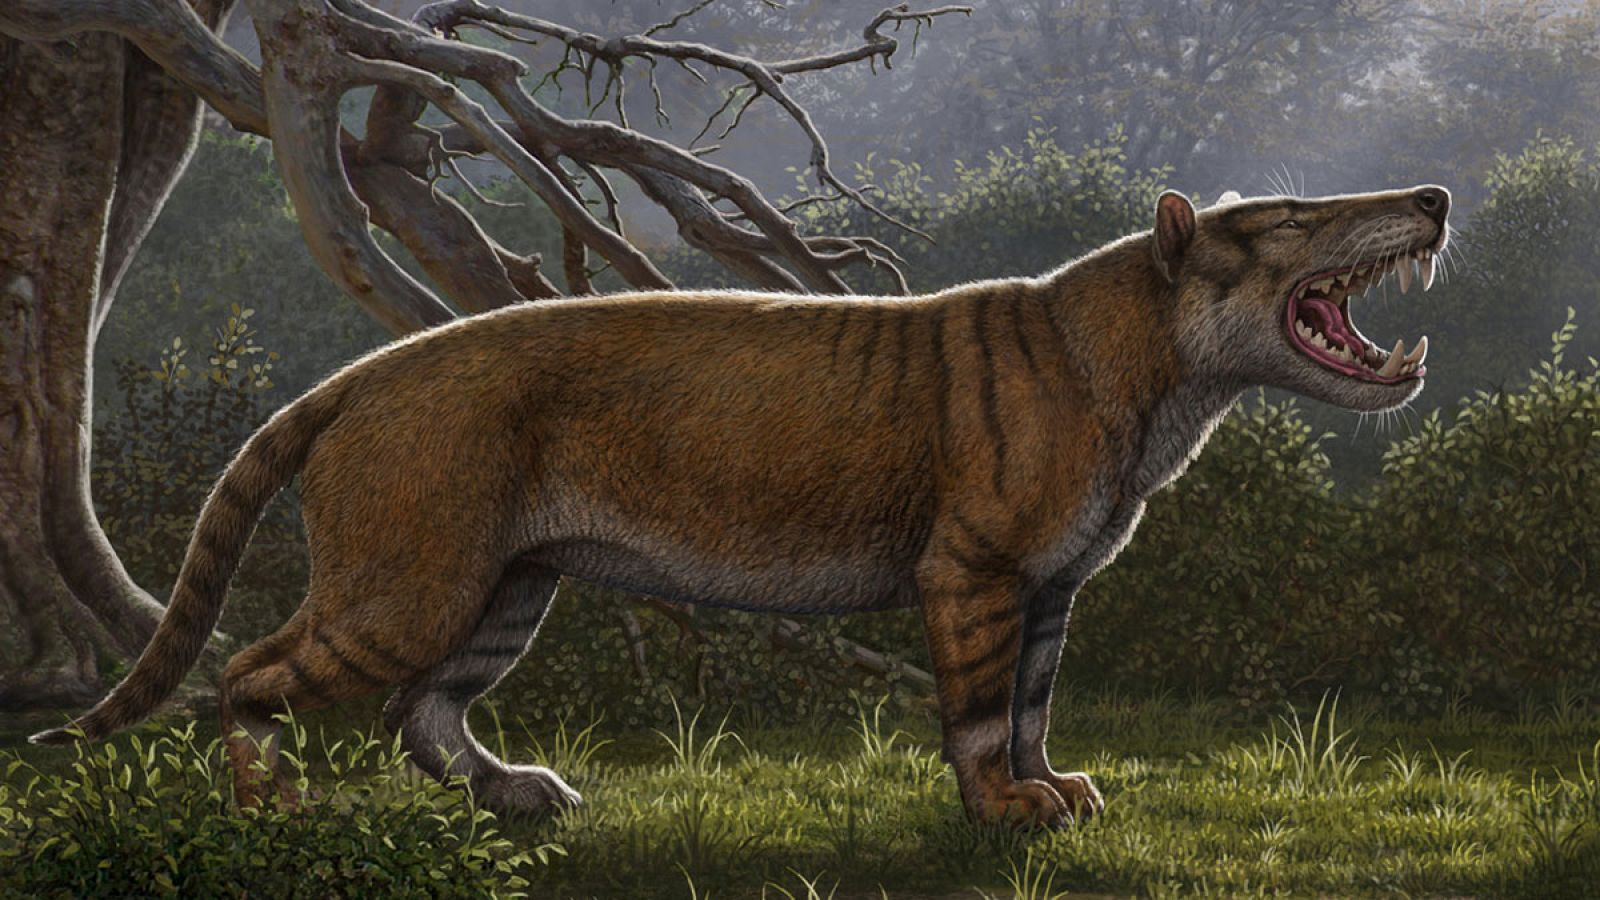 La especie era carnívora y tenía un tamaño superior al de un oso polar.